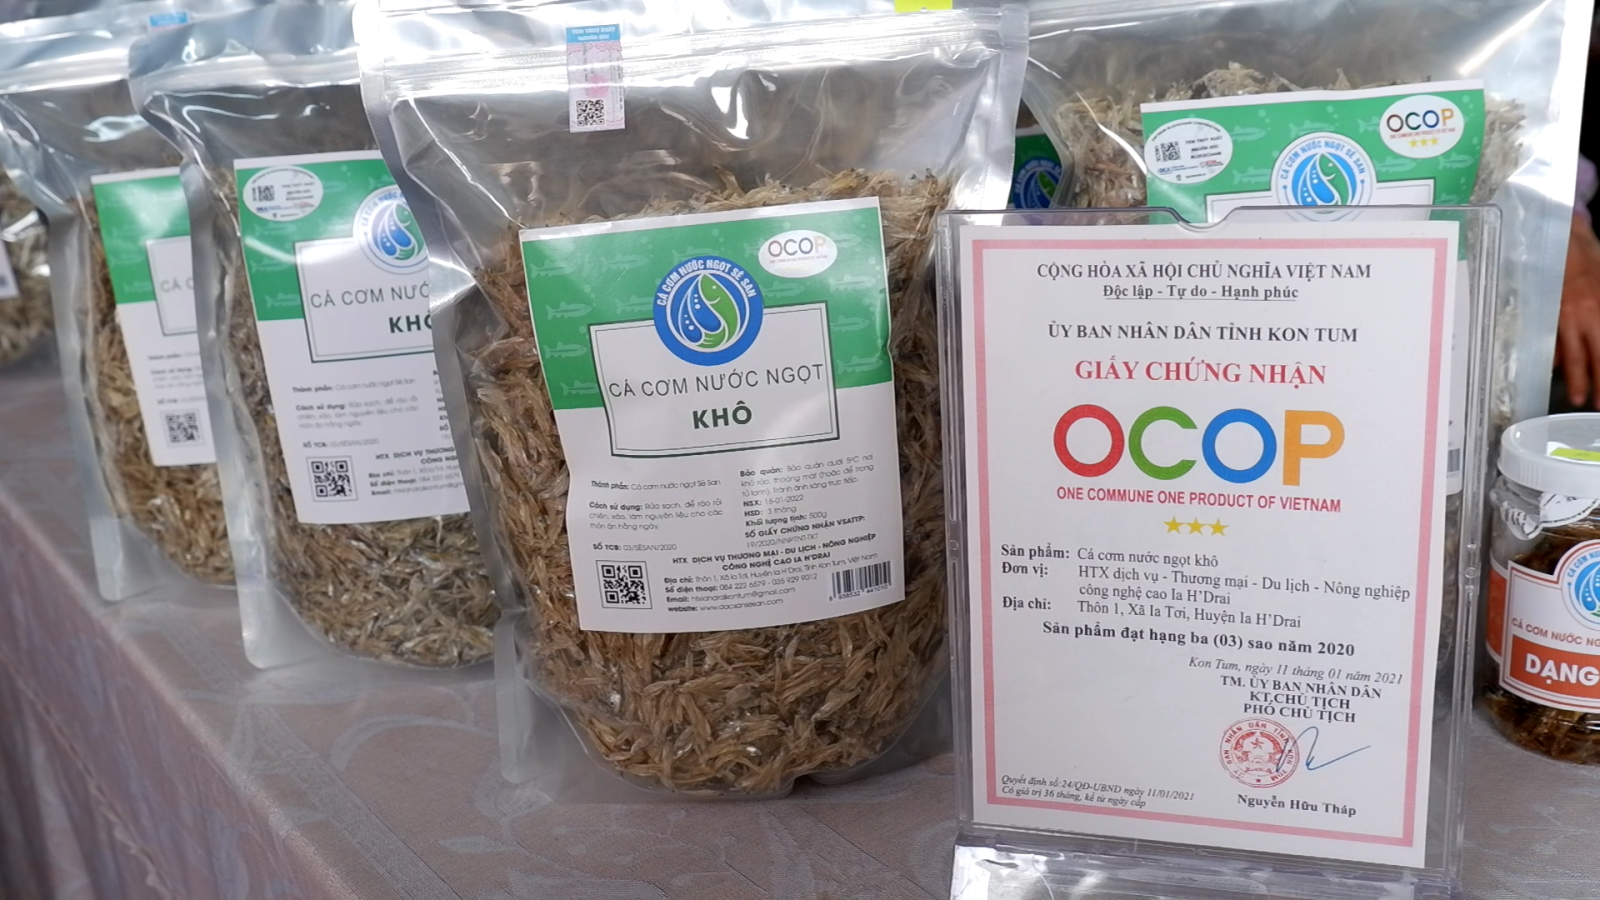 Duy trì và phát triển sản phẩm OCOP Cá cơm nước ngọt Sê San